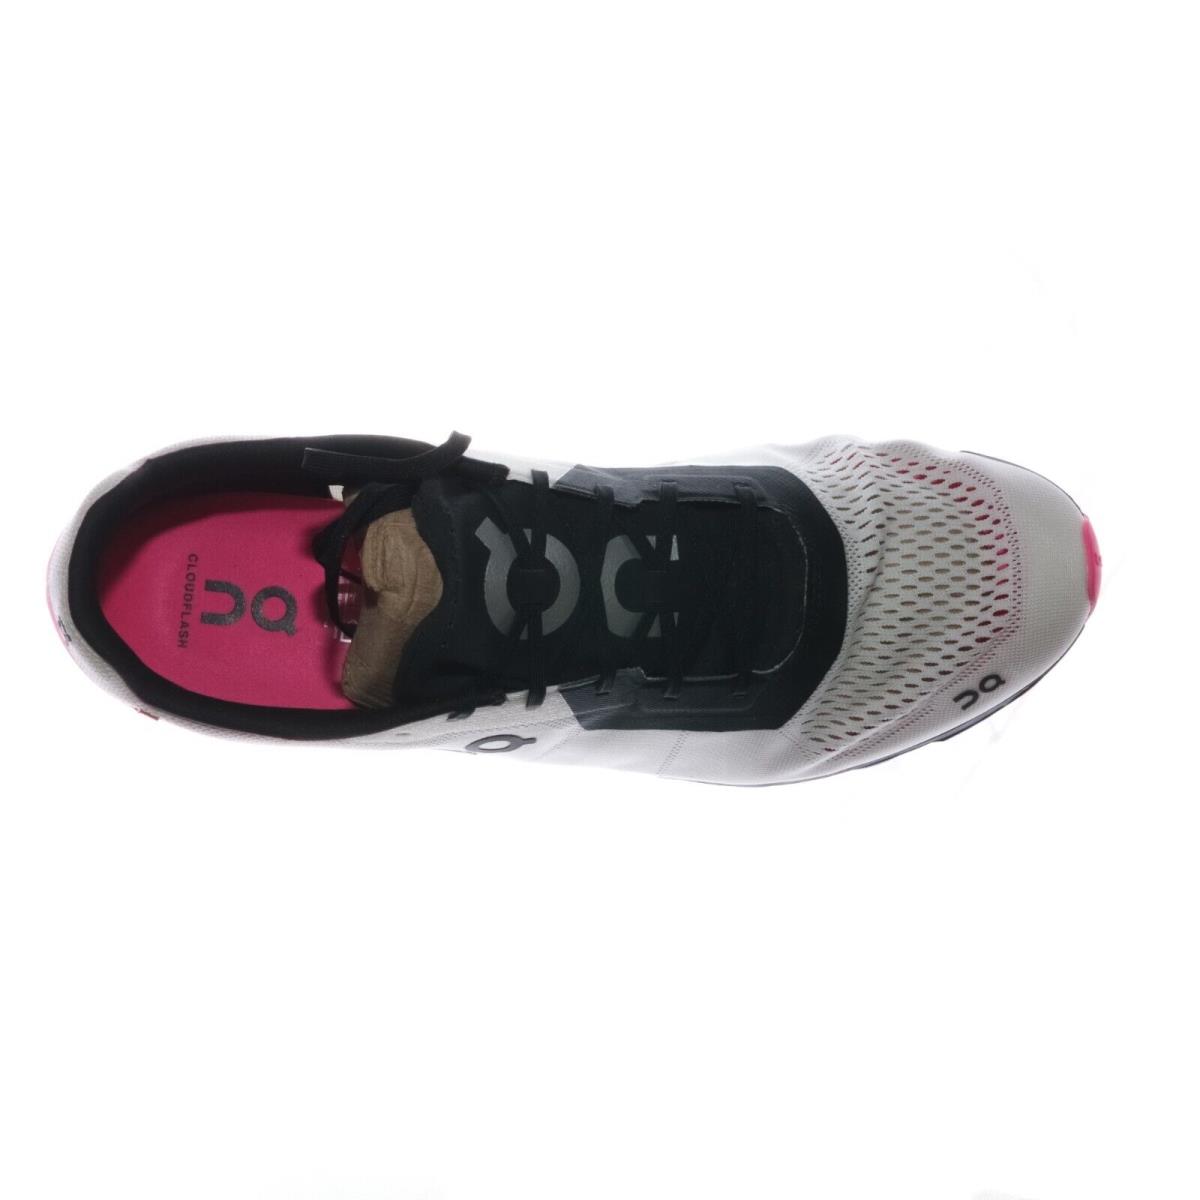 On-Running shoes Cloudflash - White, Indigo, Pink 1